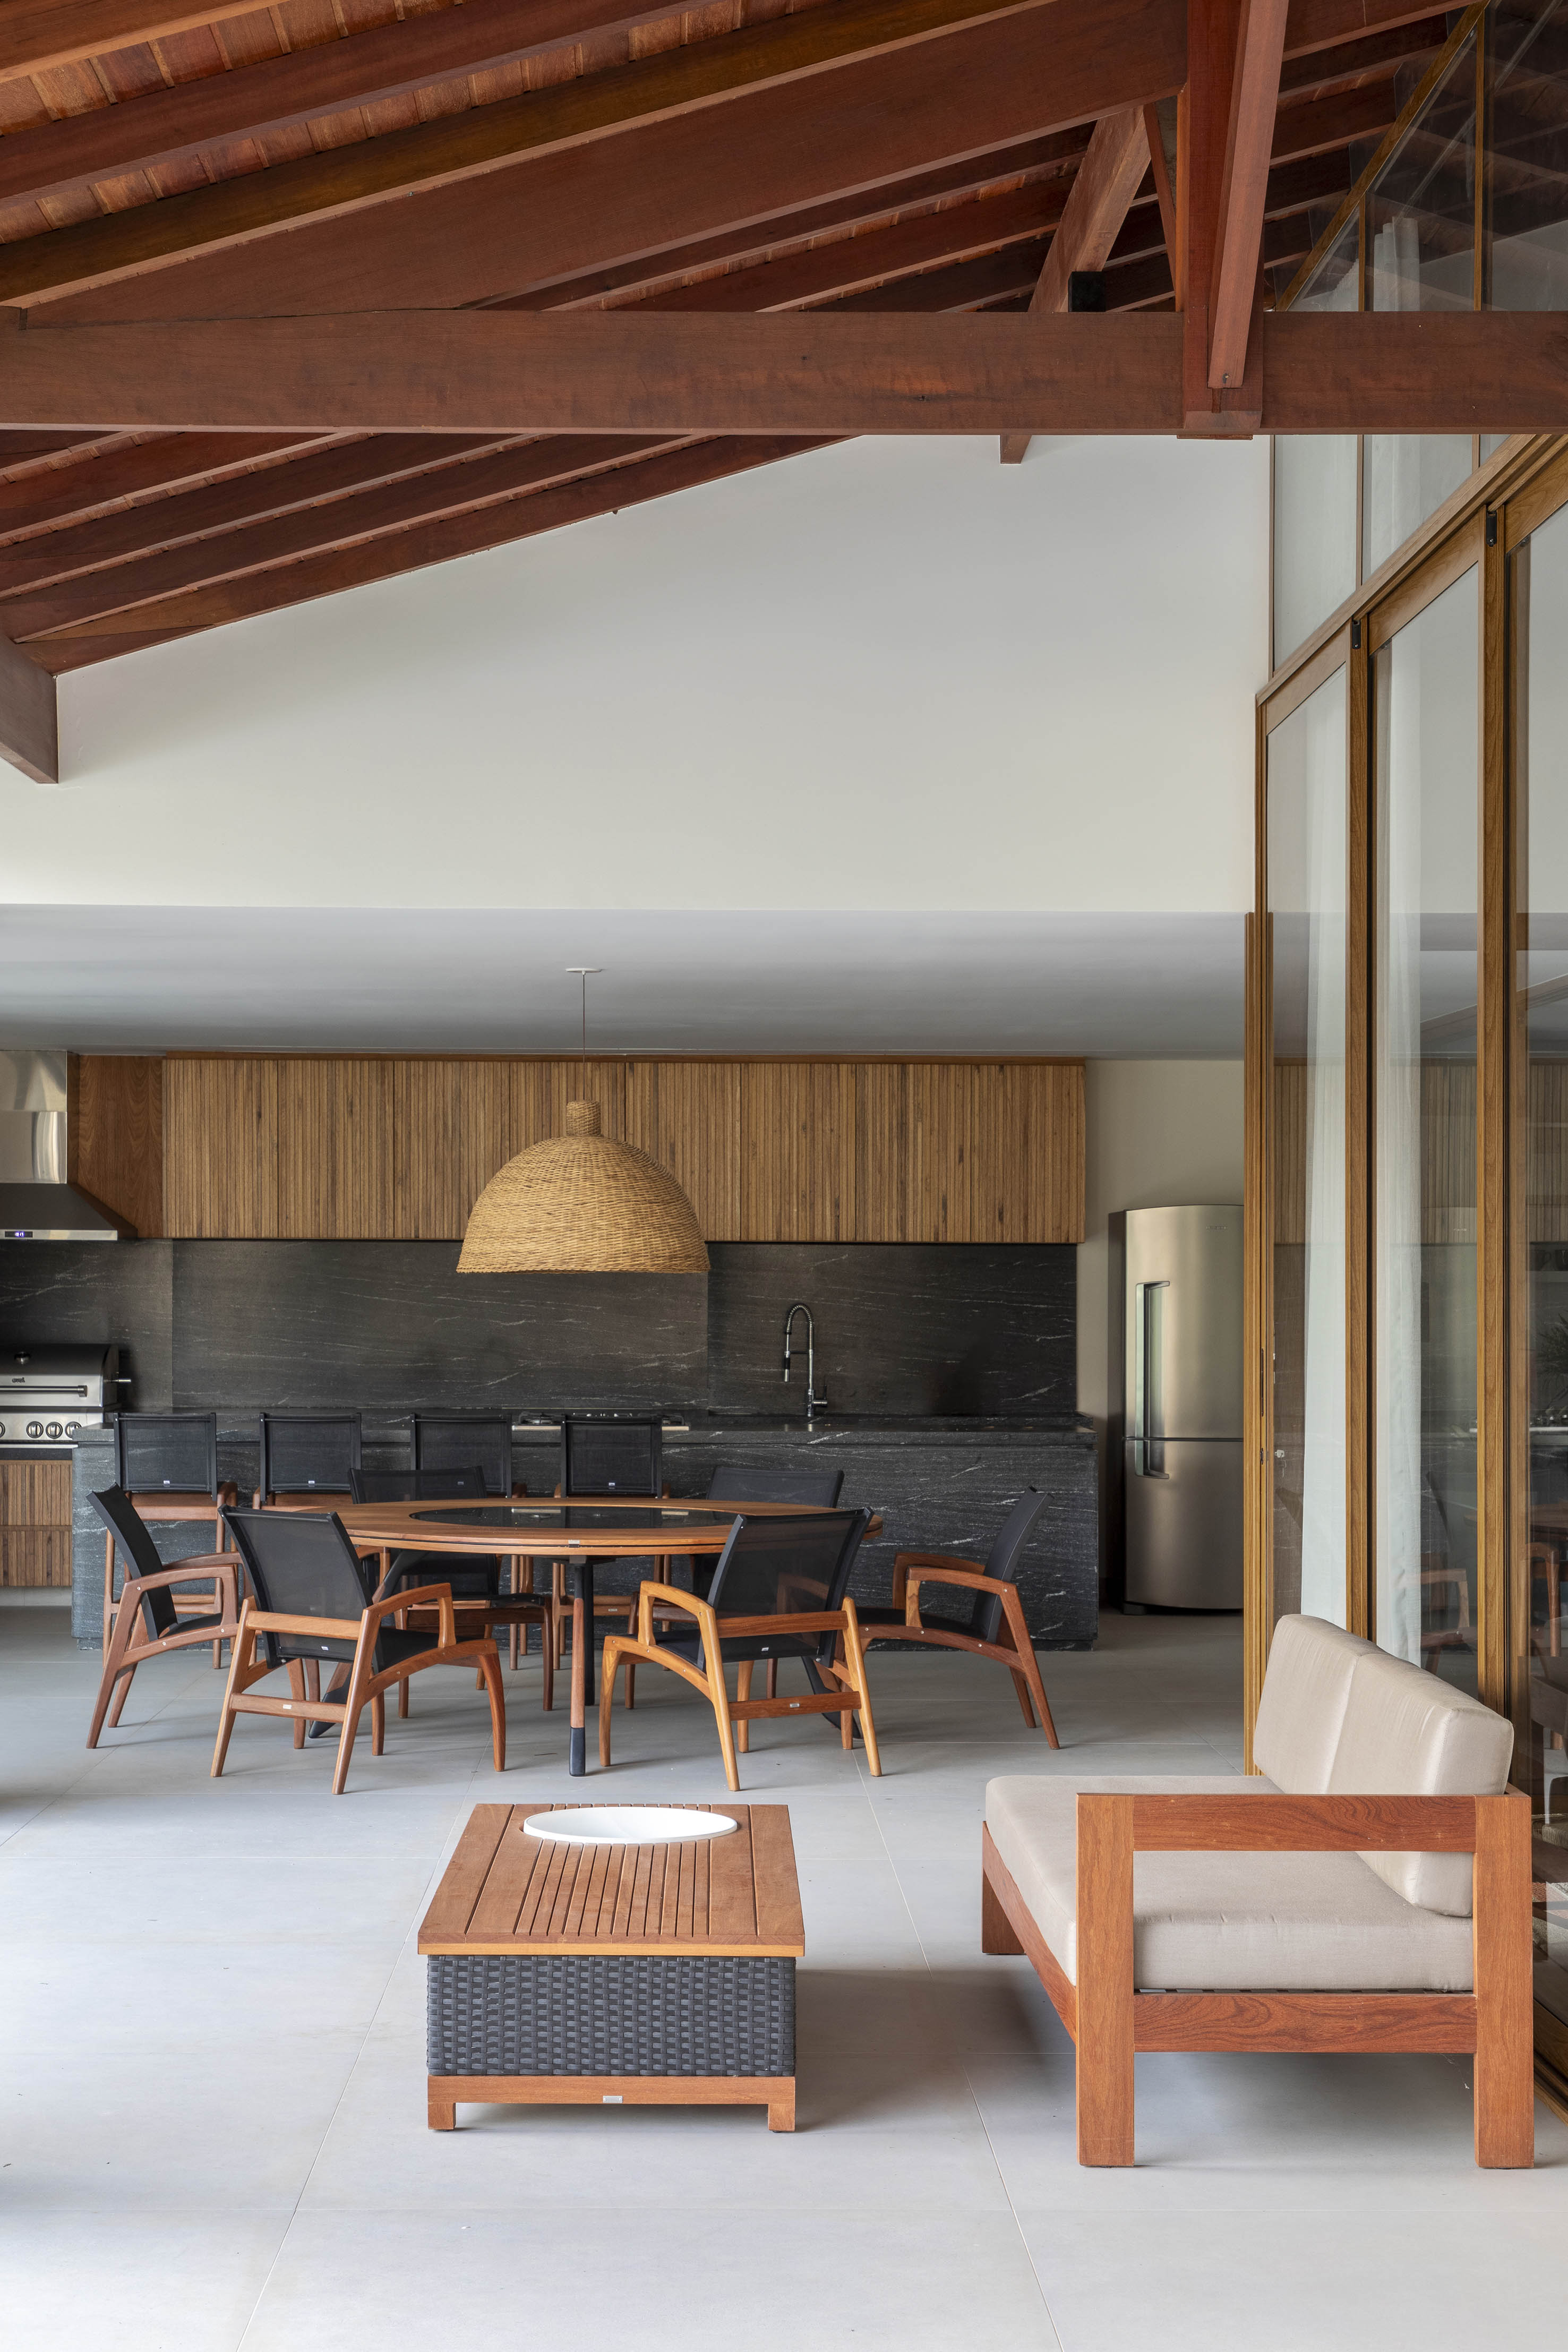 Tons naturais e base neutra marcam casa de campo com cozinha provençal. Projeto de João Panaggio. Na foto, varanda gourmet com mesa de madeira redonda, bancada preta e marcenaria preta.